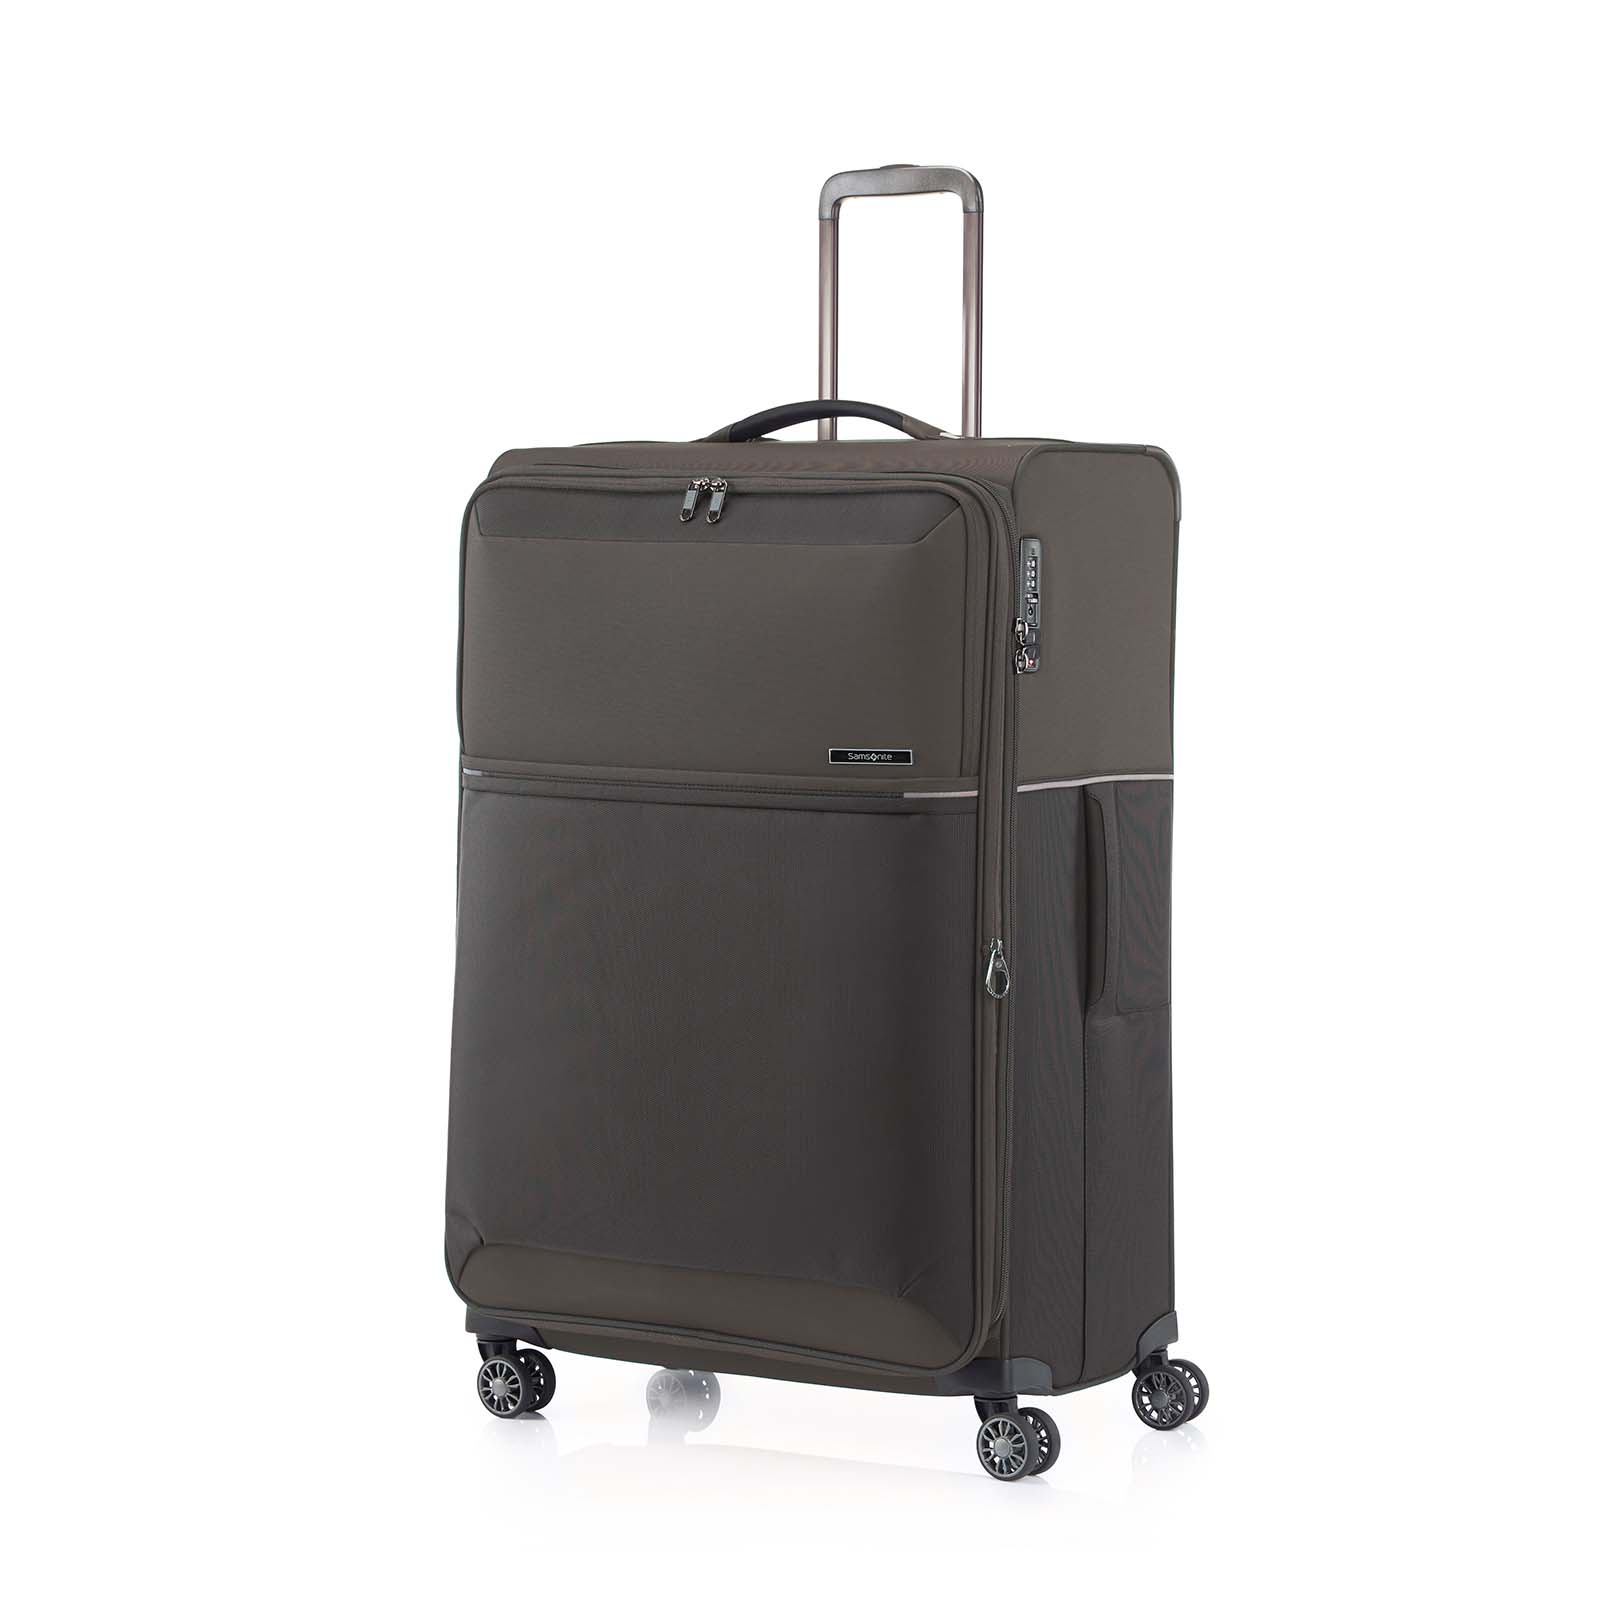 Samsonite-73h-78cm-Suitcase-Platinum-Grey-Front-Angle